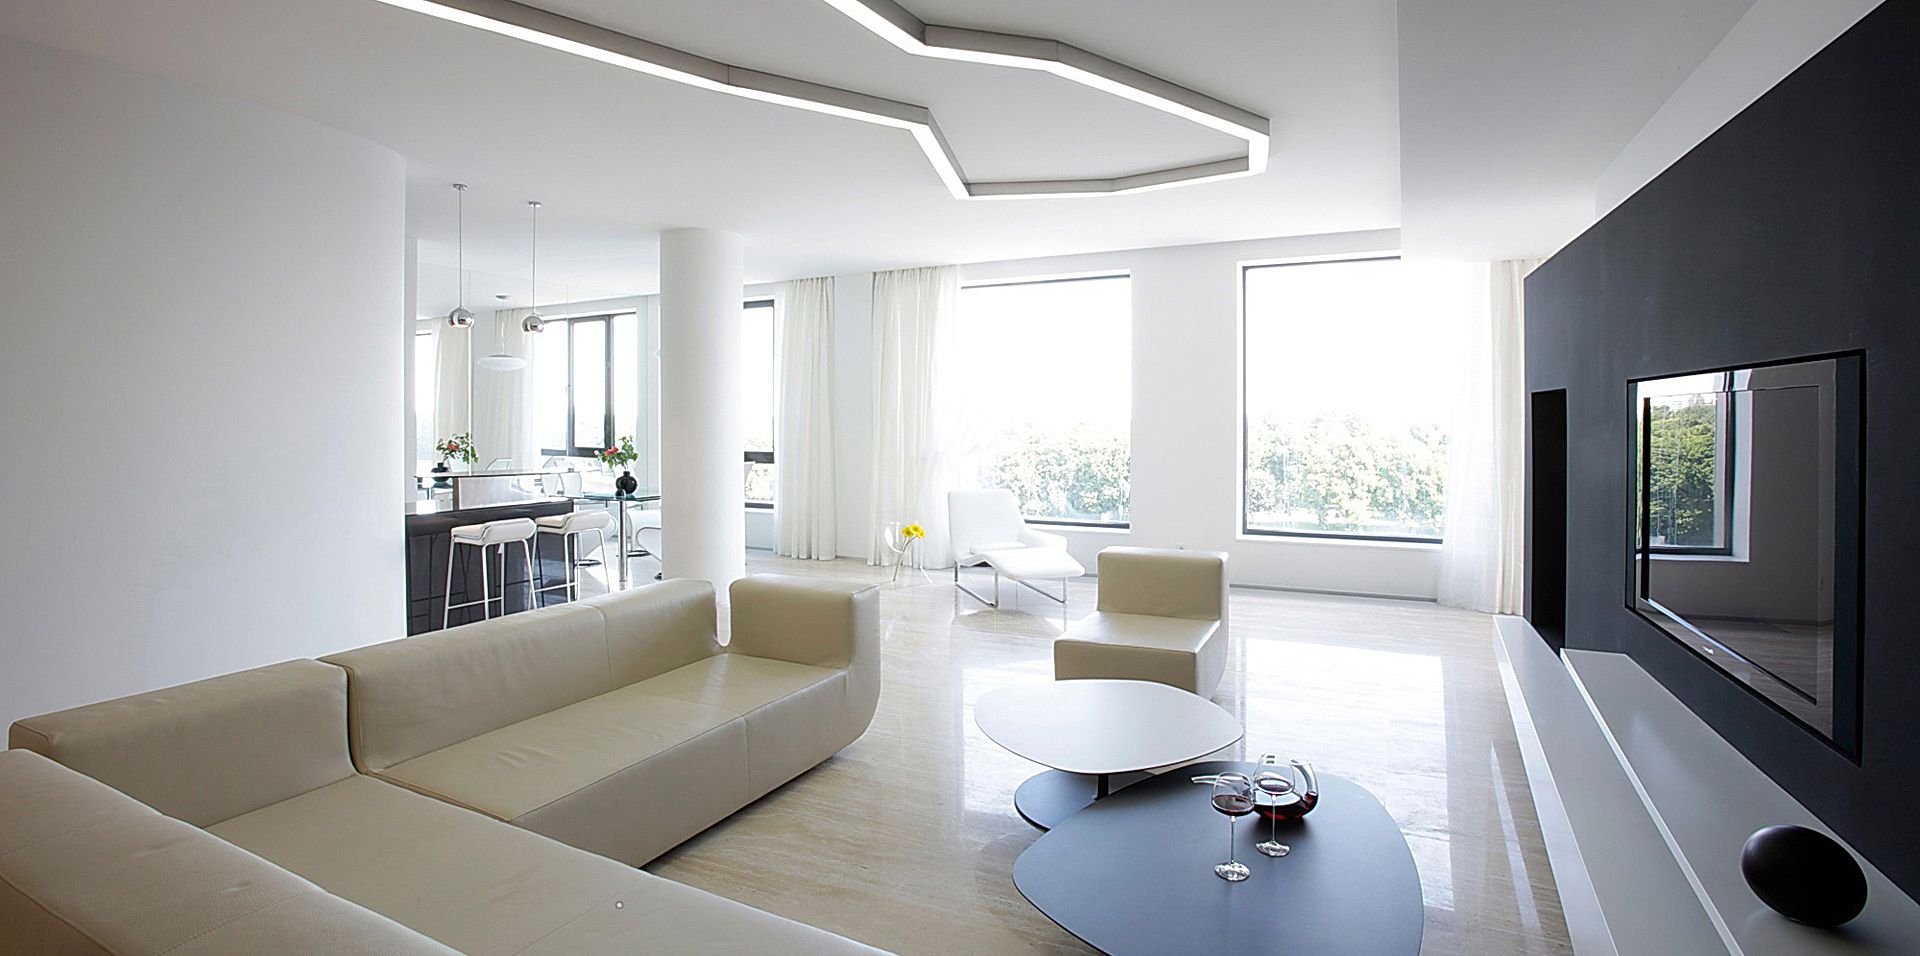 Minimalist design interior living